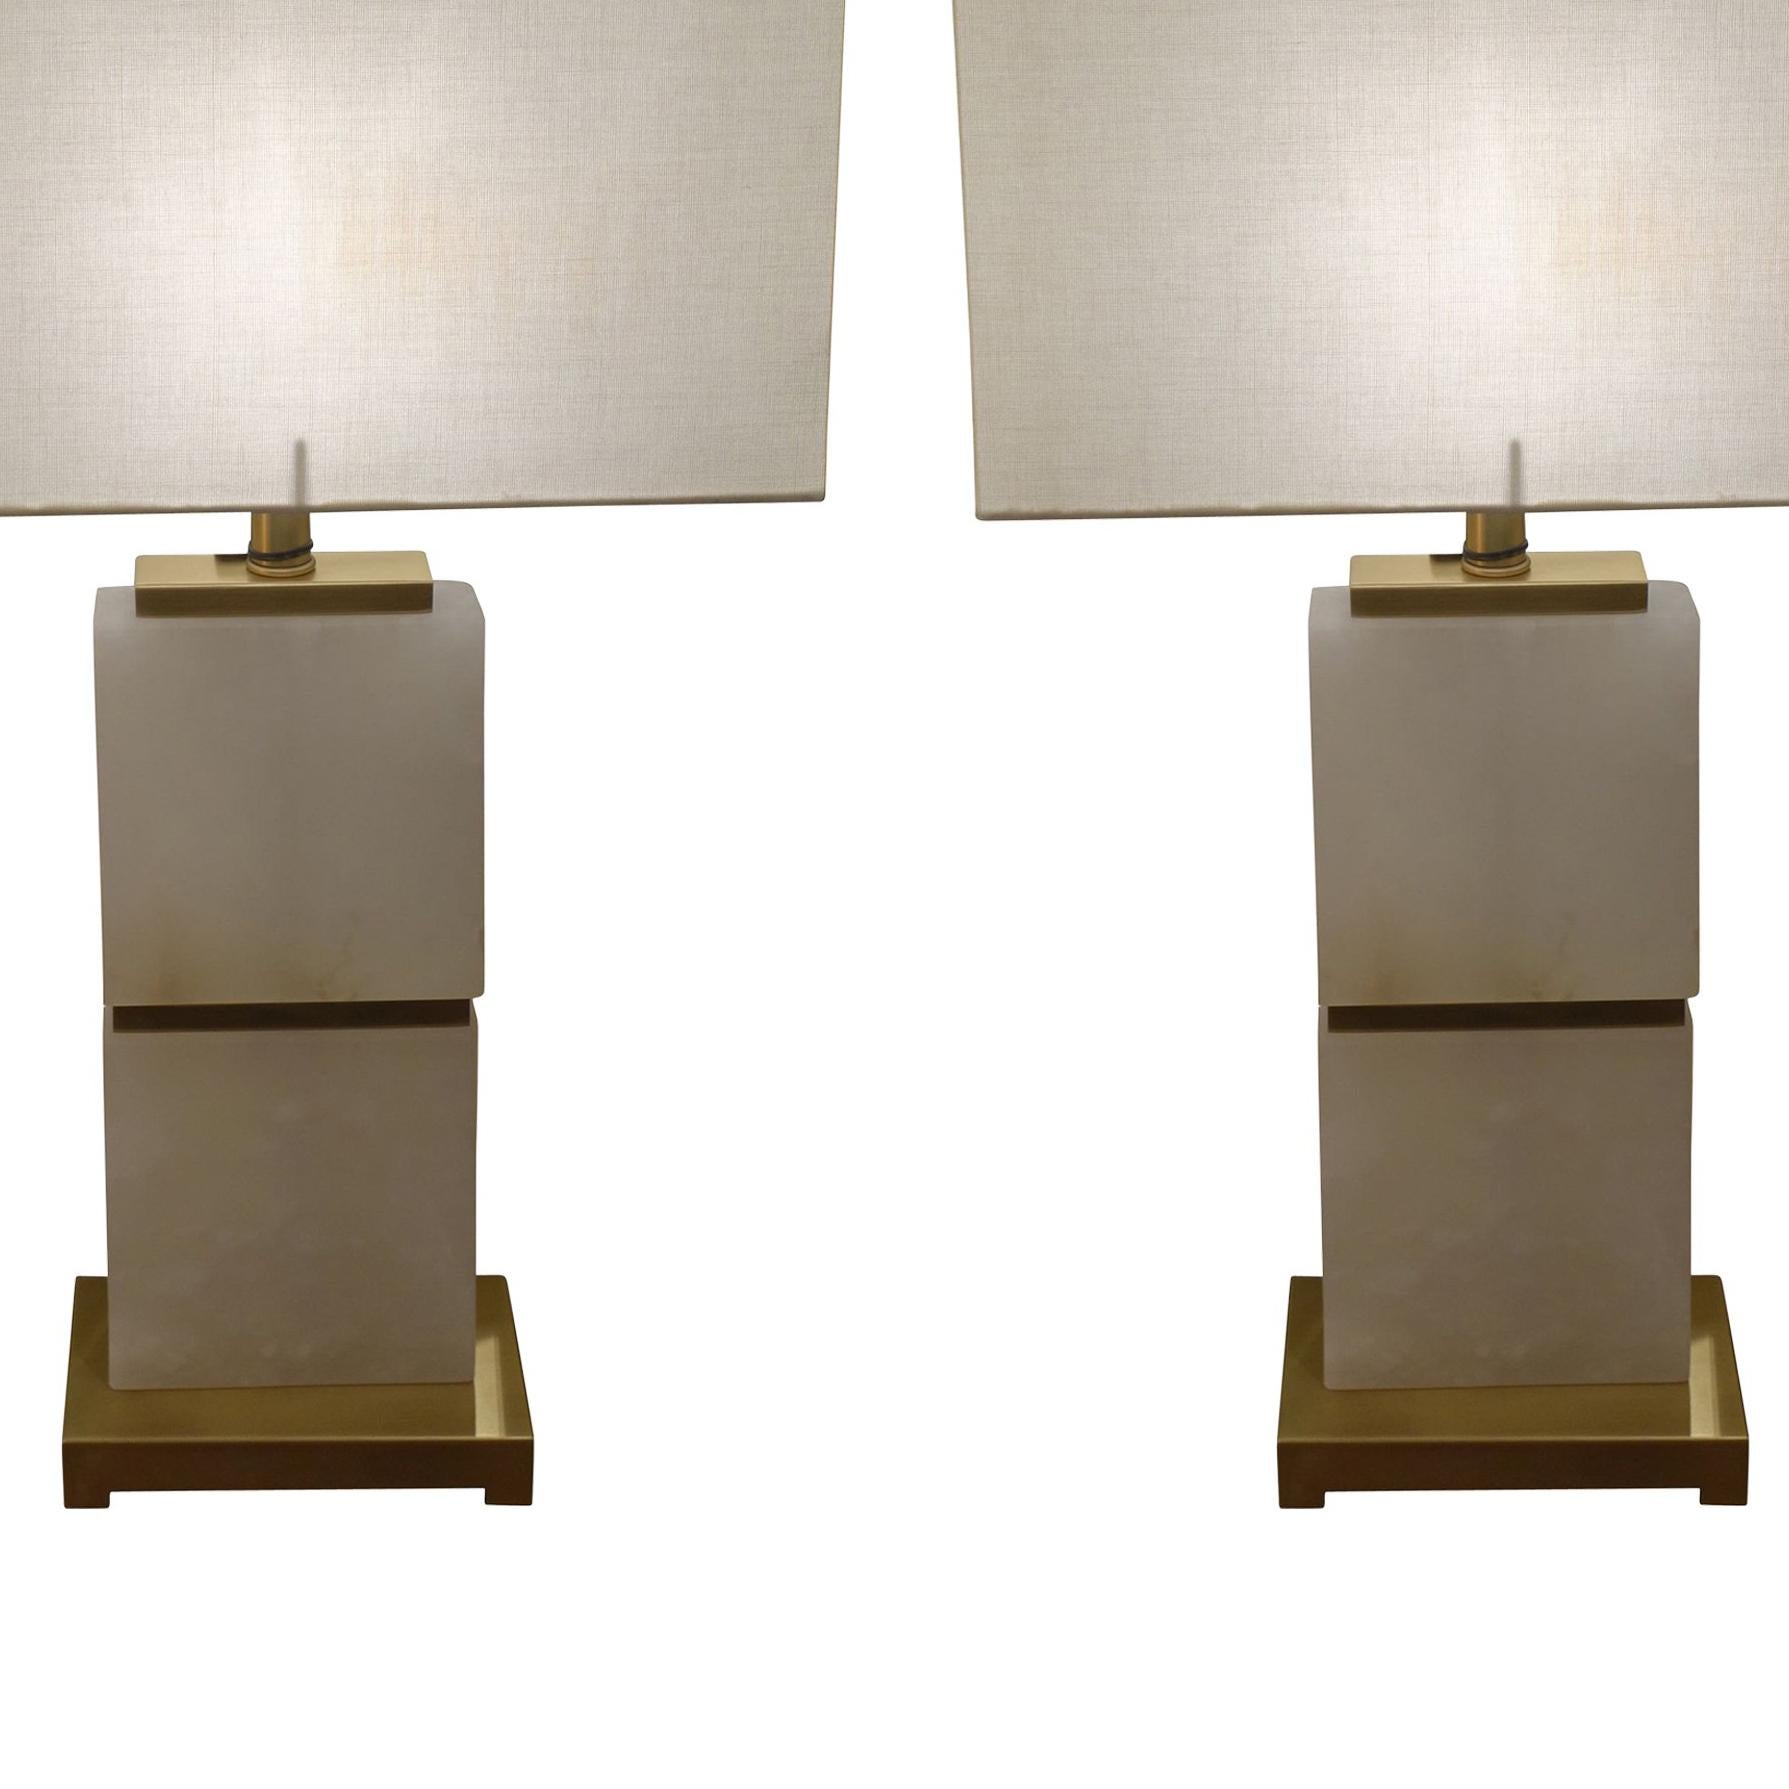 Zeitgenössisches holländisches Paar weißer Alabasterlampen mit horizontalen Messingverzierungen und Messingfuß.
Neuer rechteckiger Leinenschirm.
Maße: Schirm 15,5